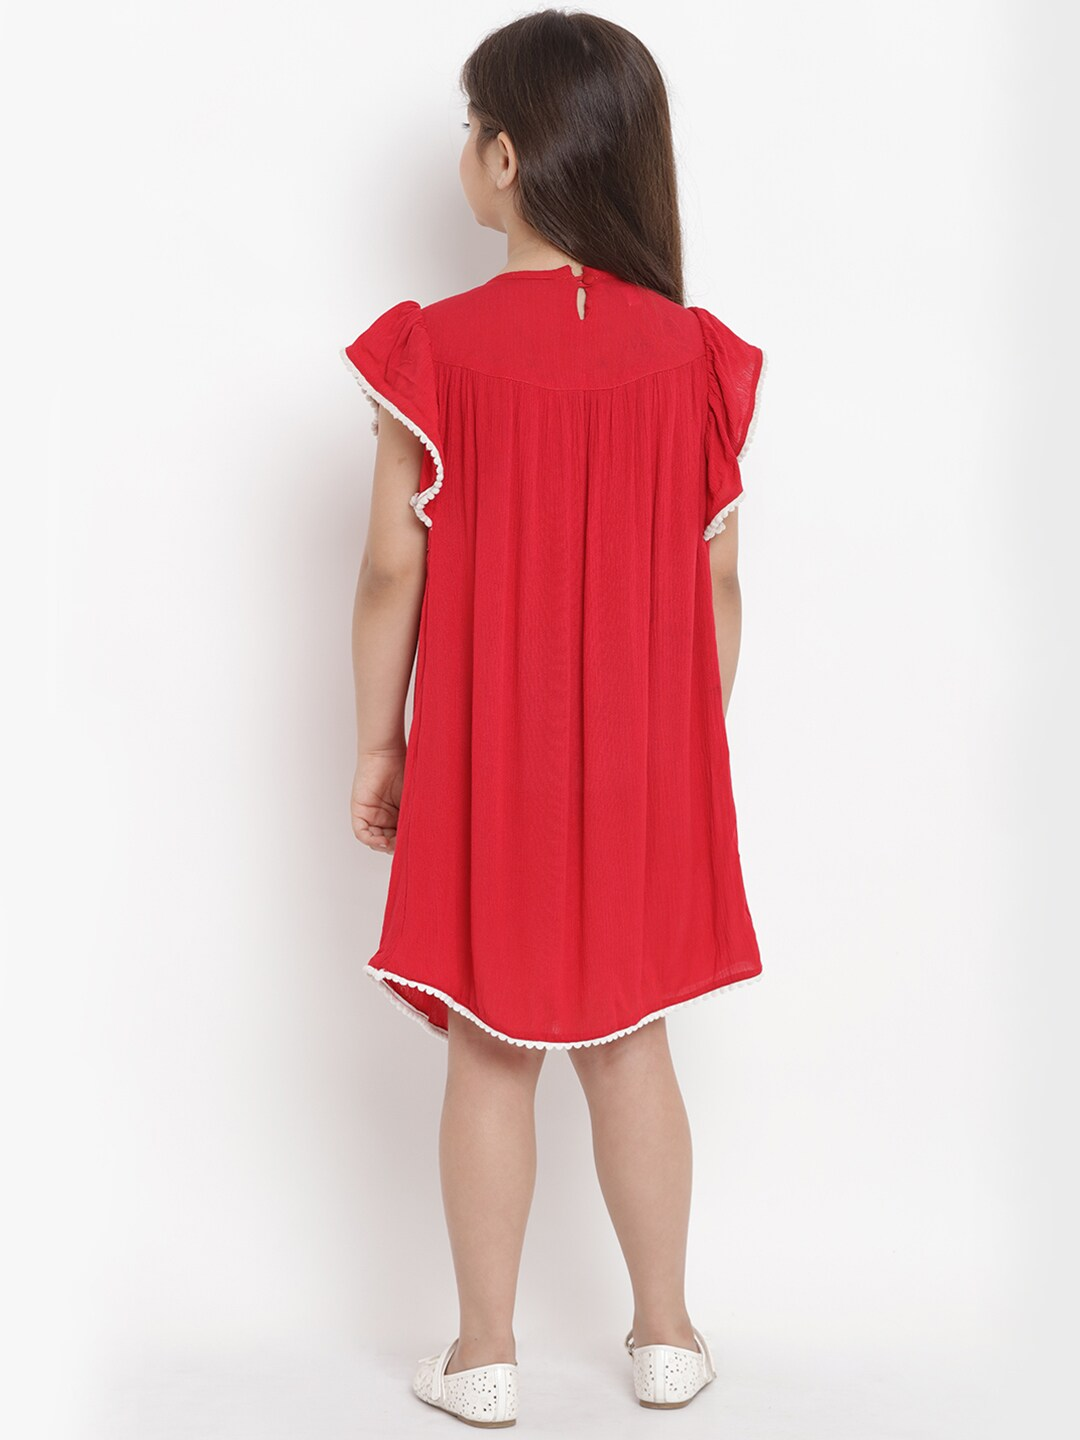 Girls Red A-Line Dress